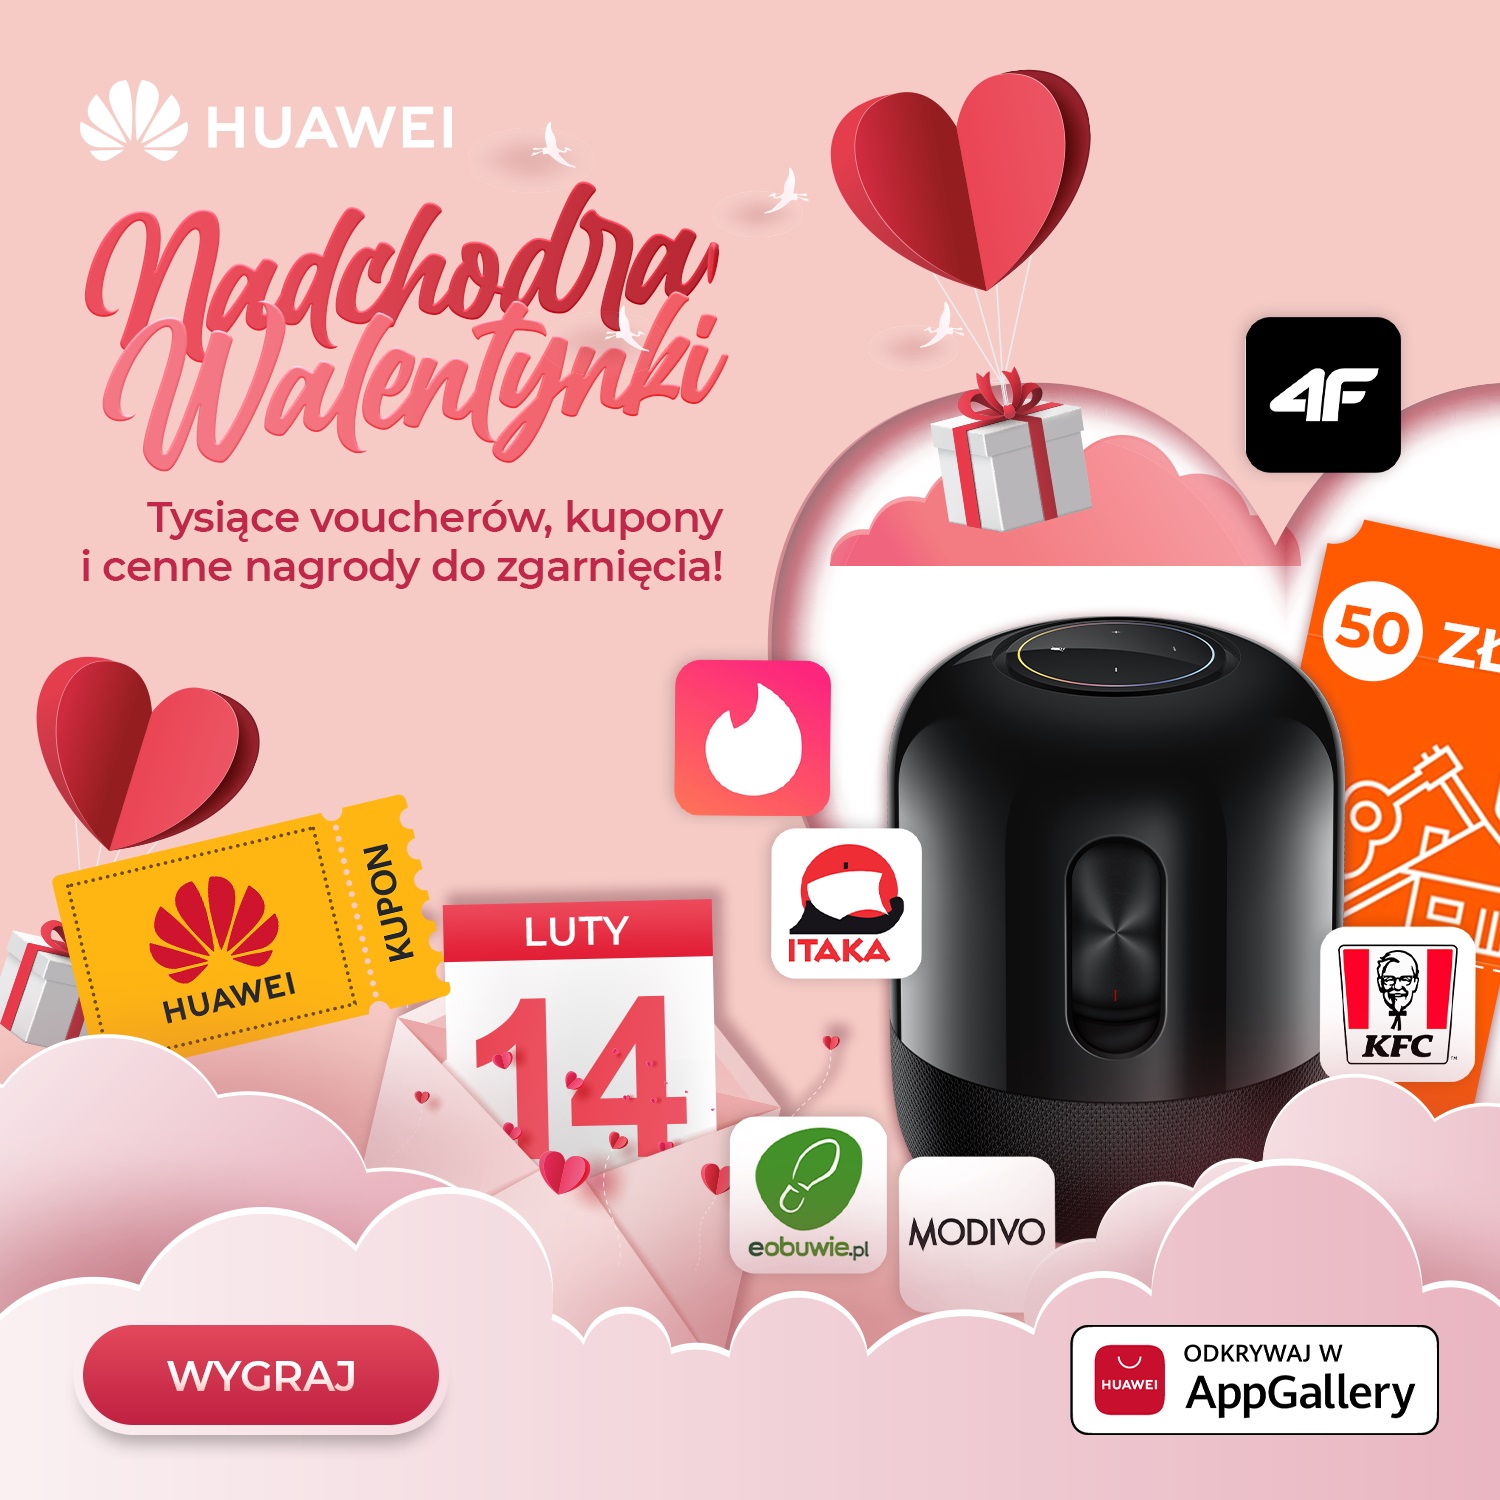 Huawei AppGallery promocje Walentynki